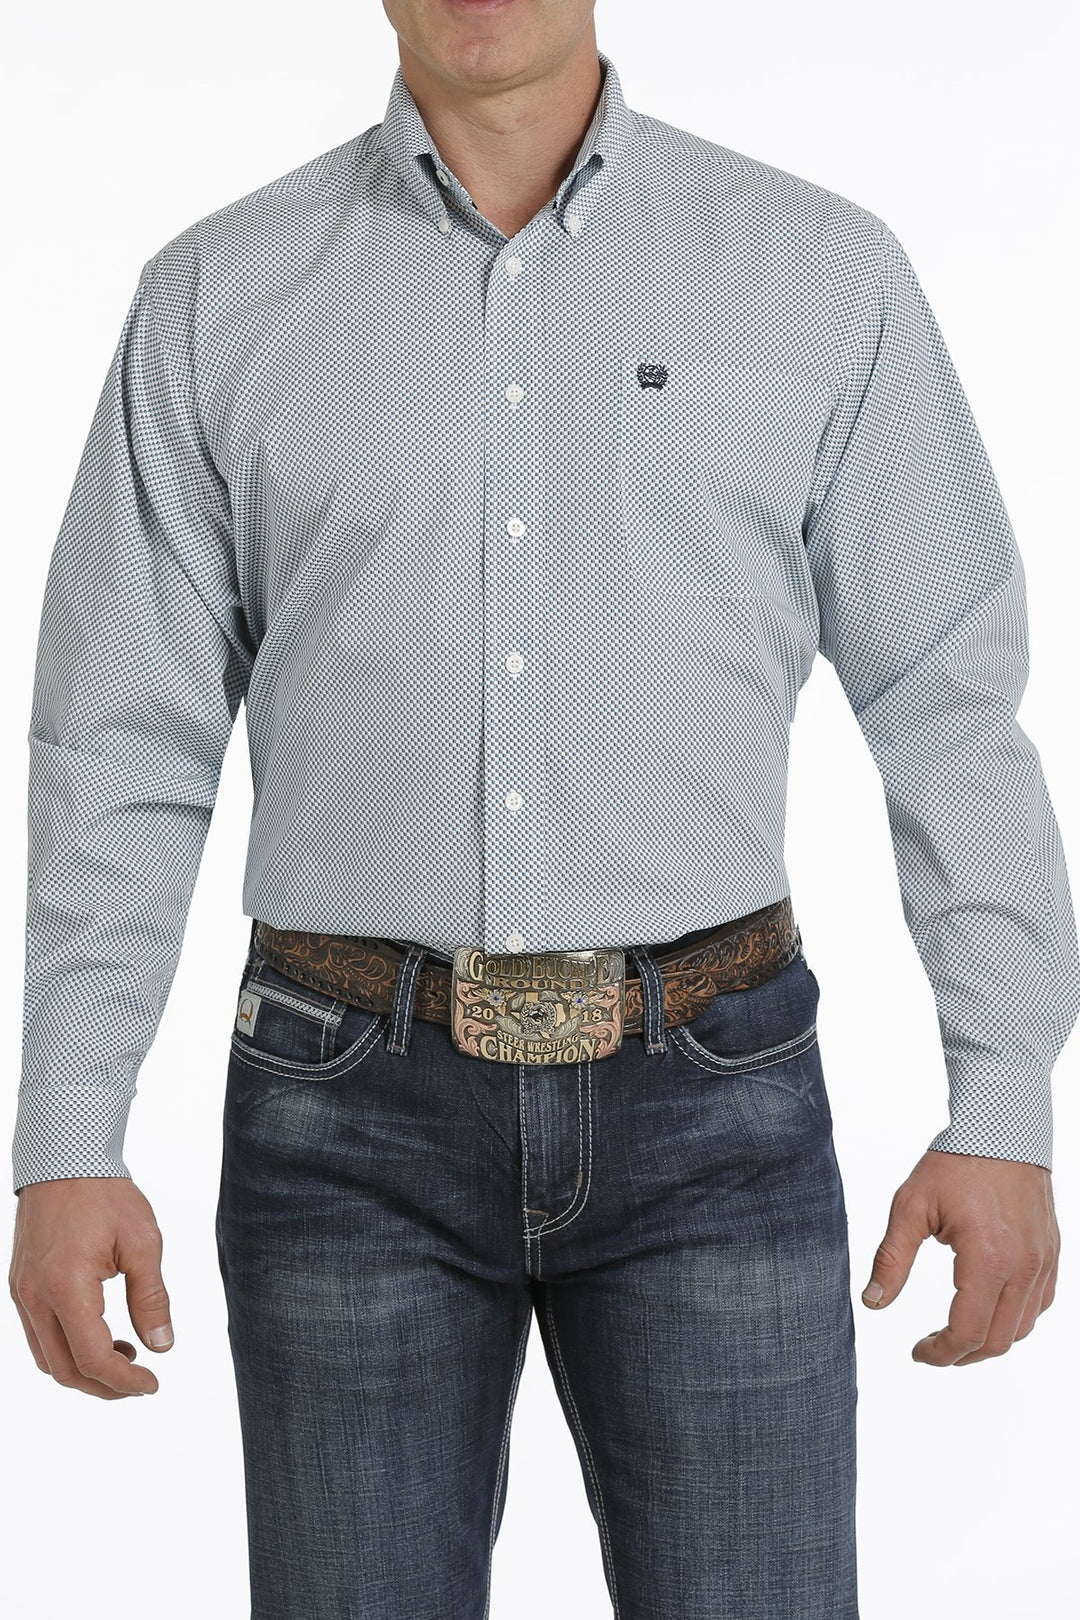 Camicia western abbottonata con stampa geometrica Cinch da uomo - MTW1105305